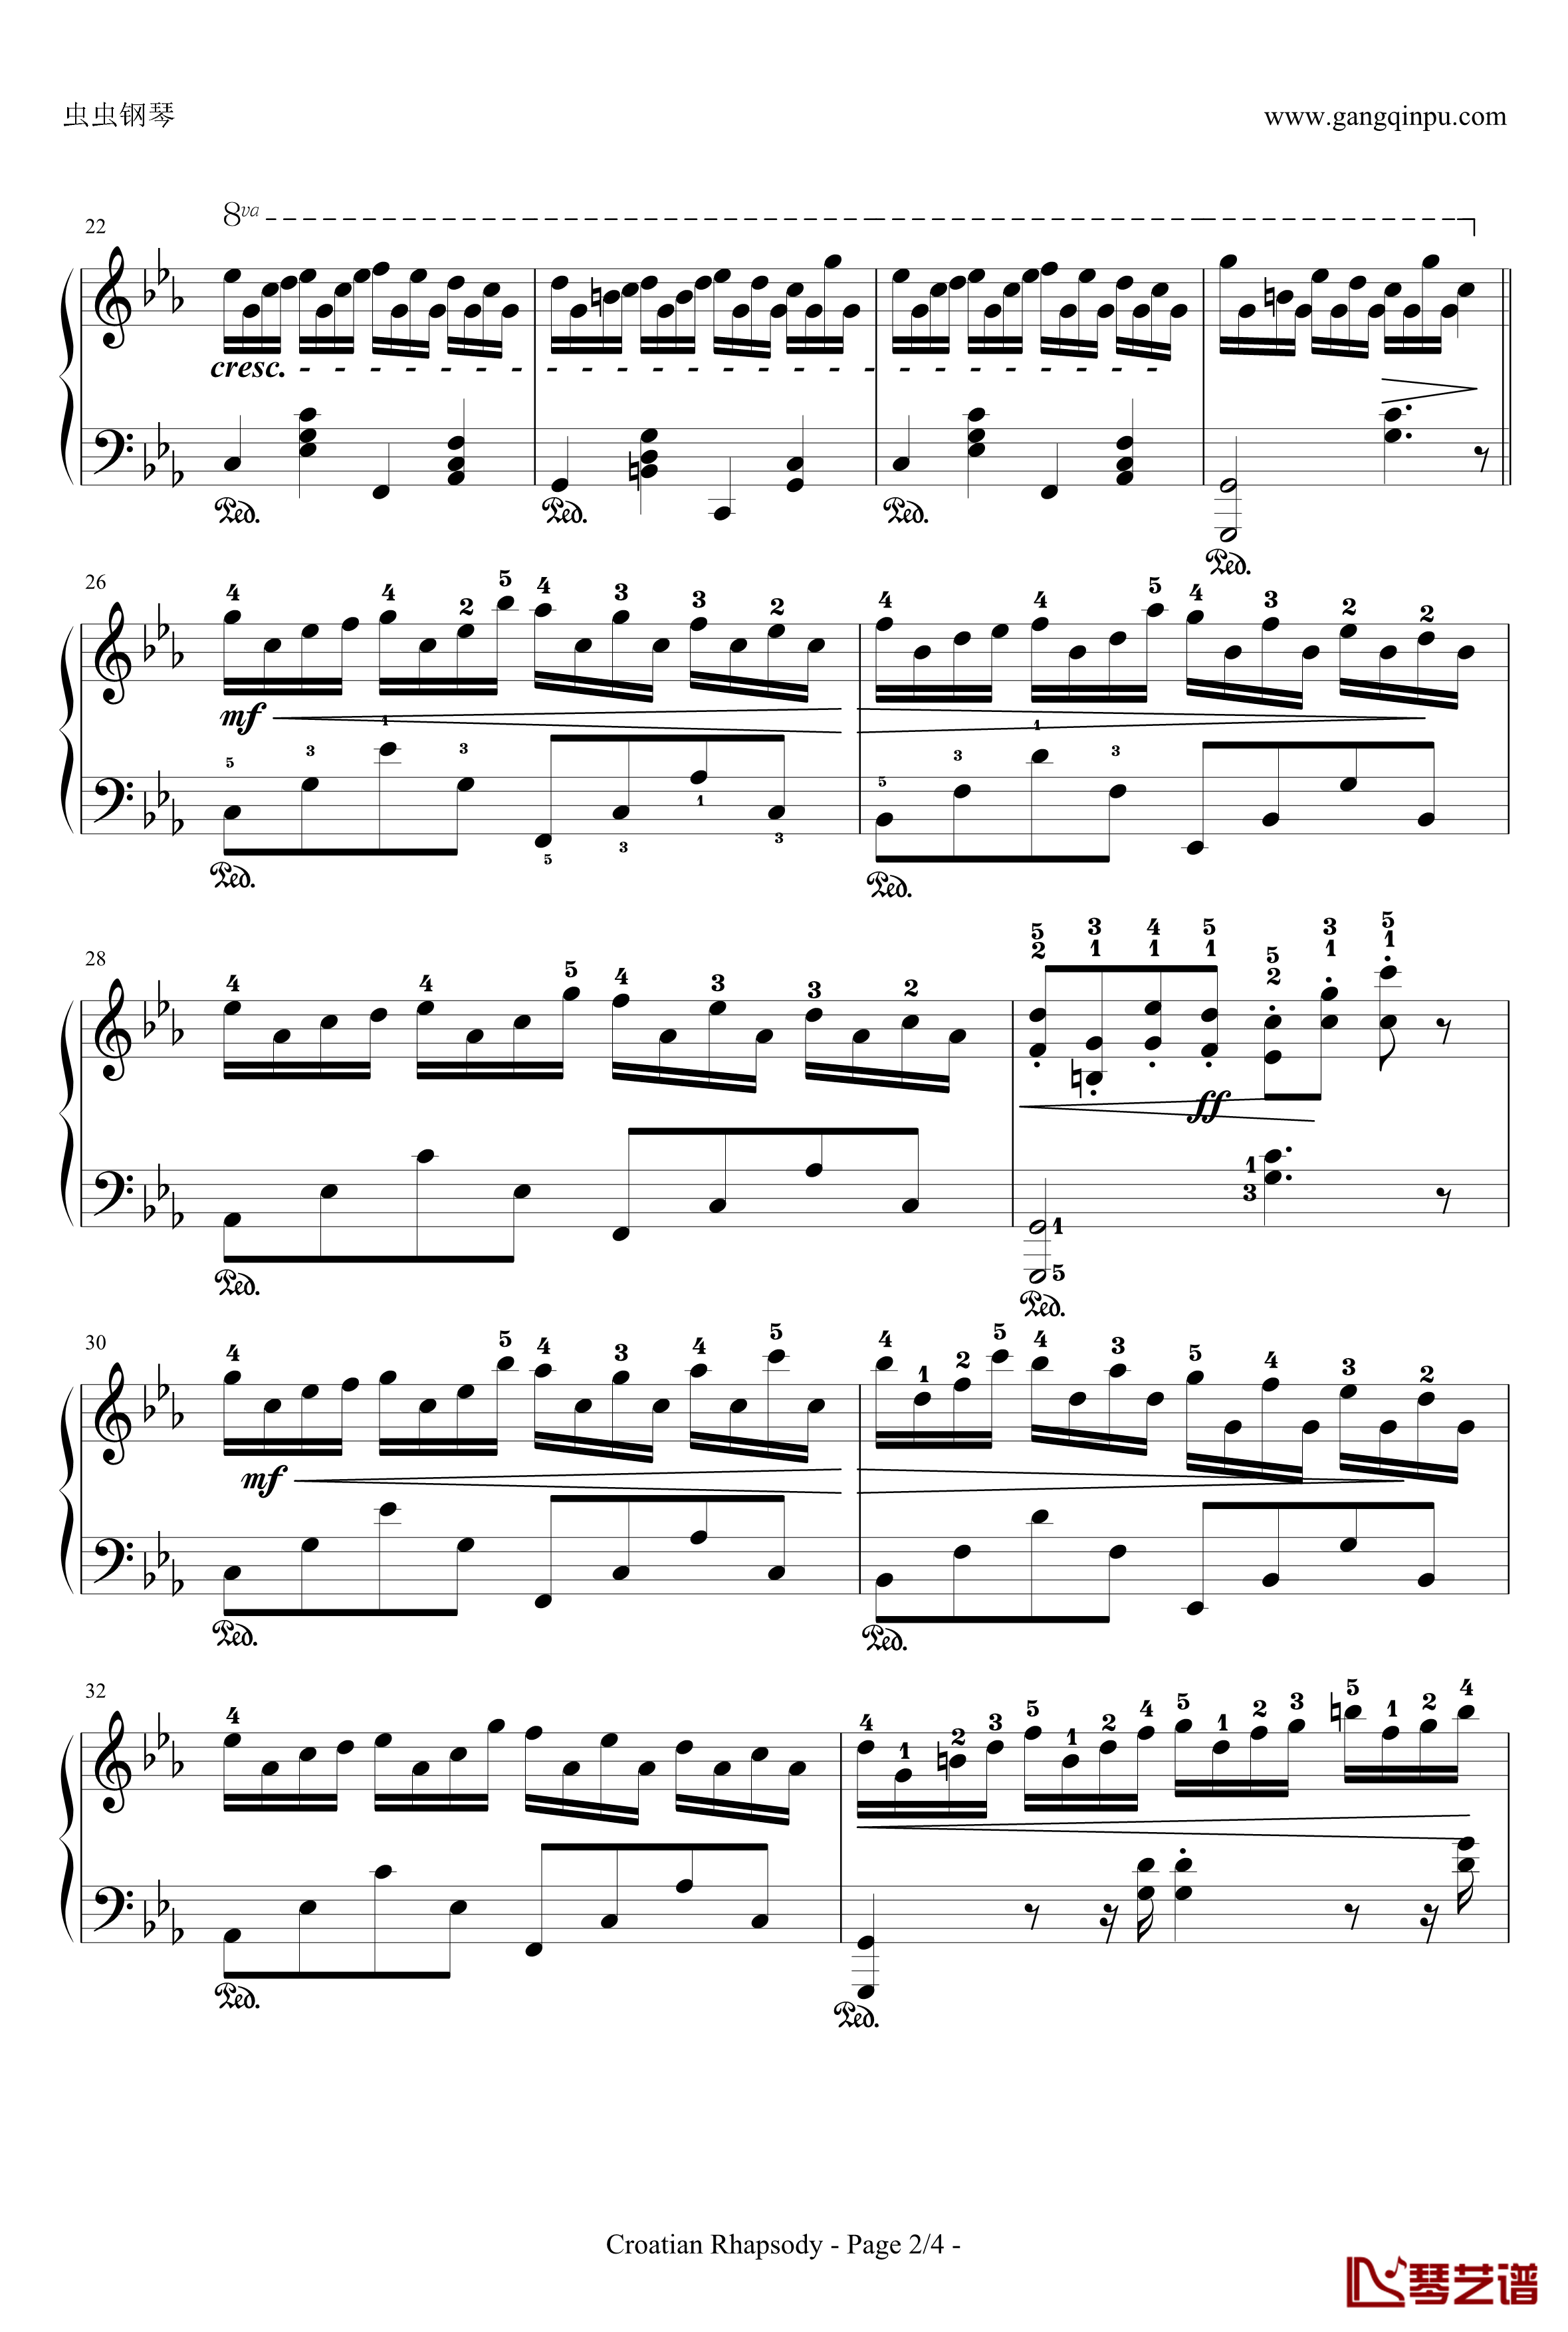 克罗地亚狂想曲钢琴谱-带指法简易版学生最爱-马克西姆-Maksim·Mrvica2